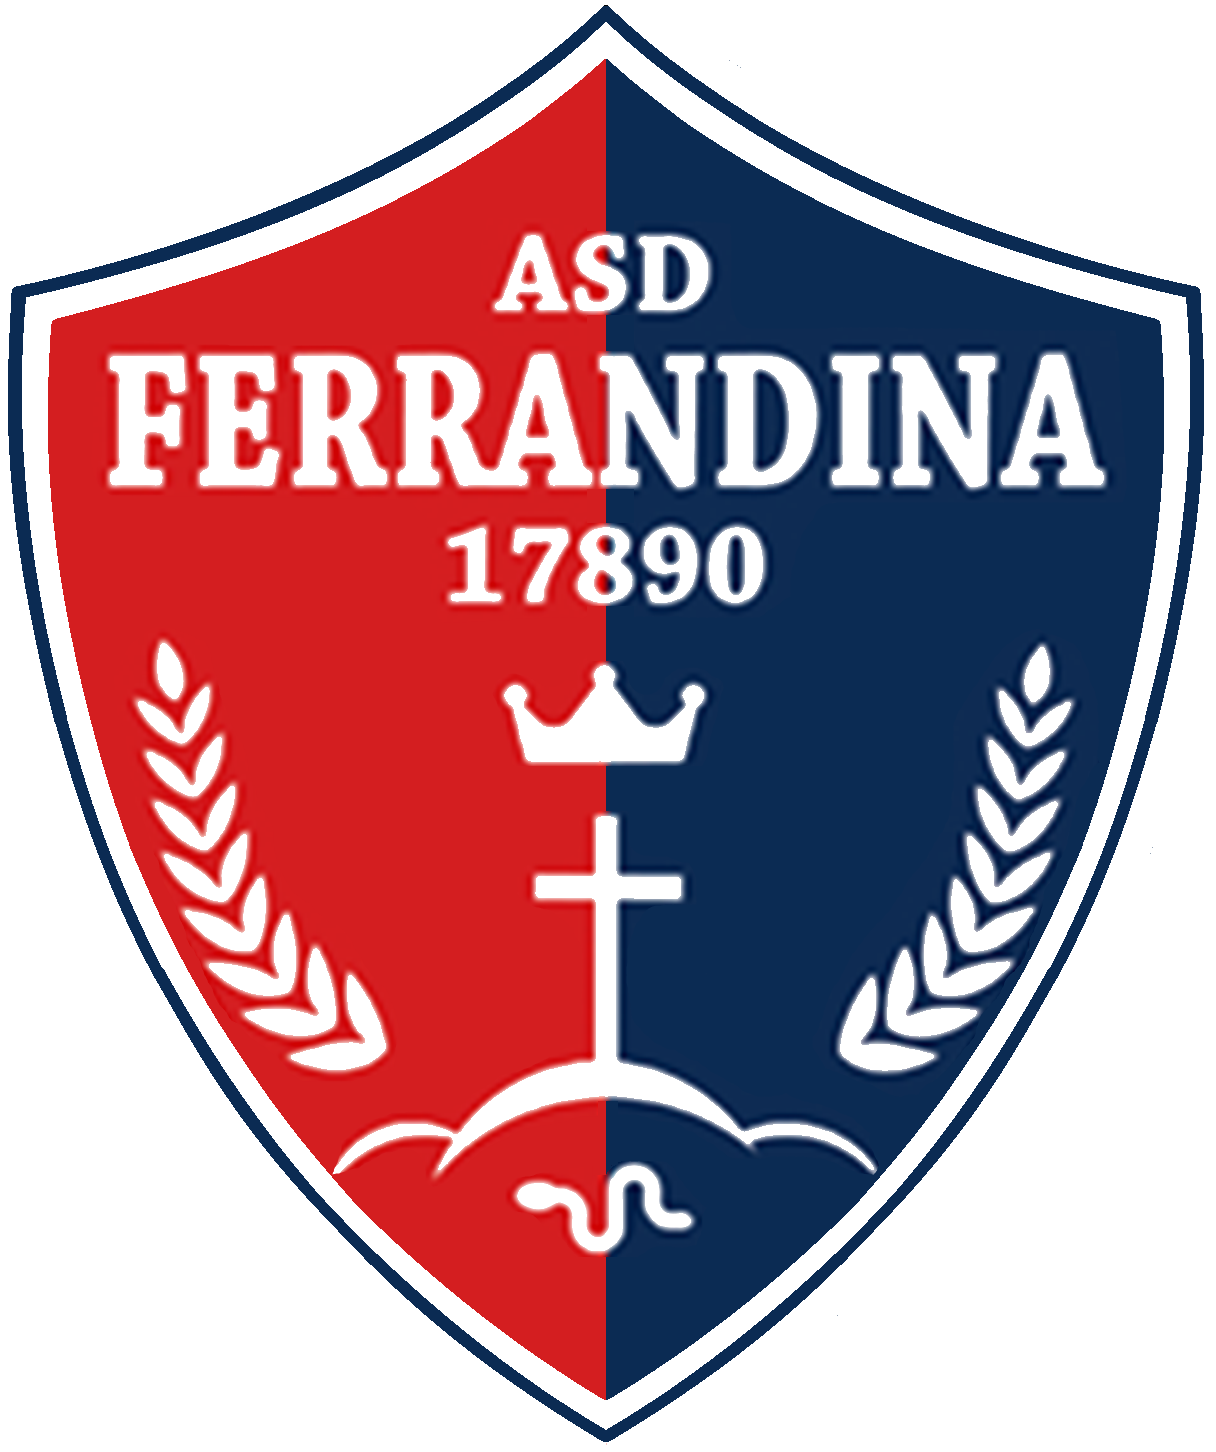 Wappen ASD Ferrandina 17890 diverse